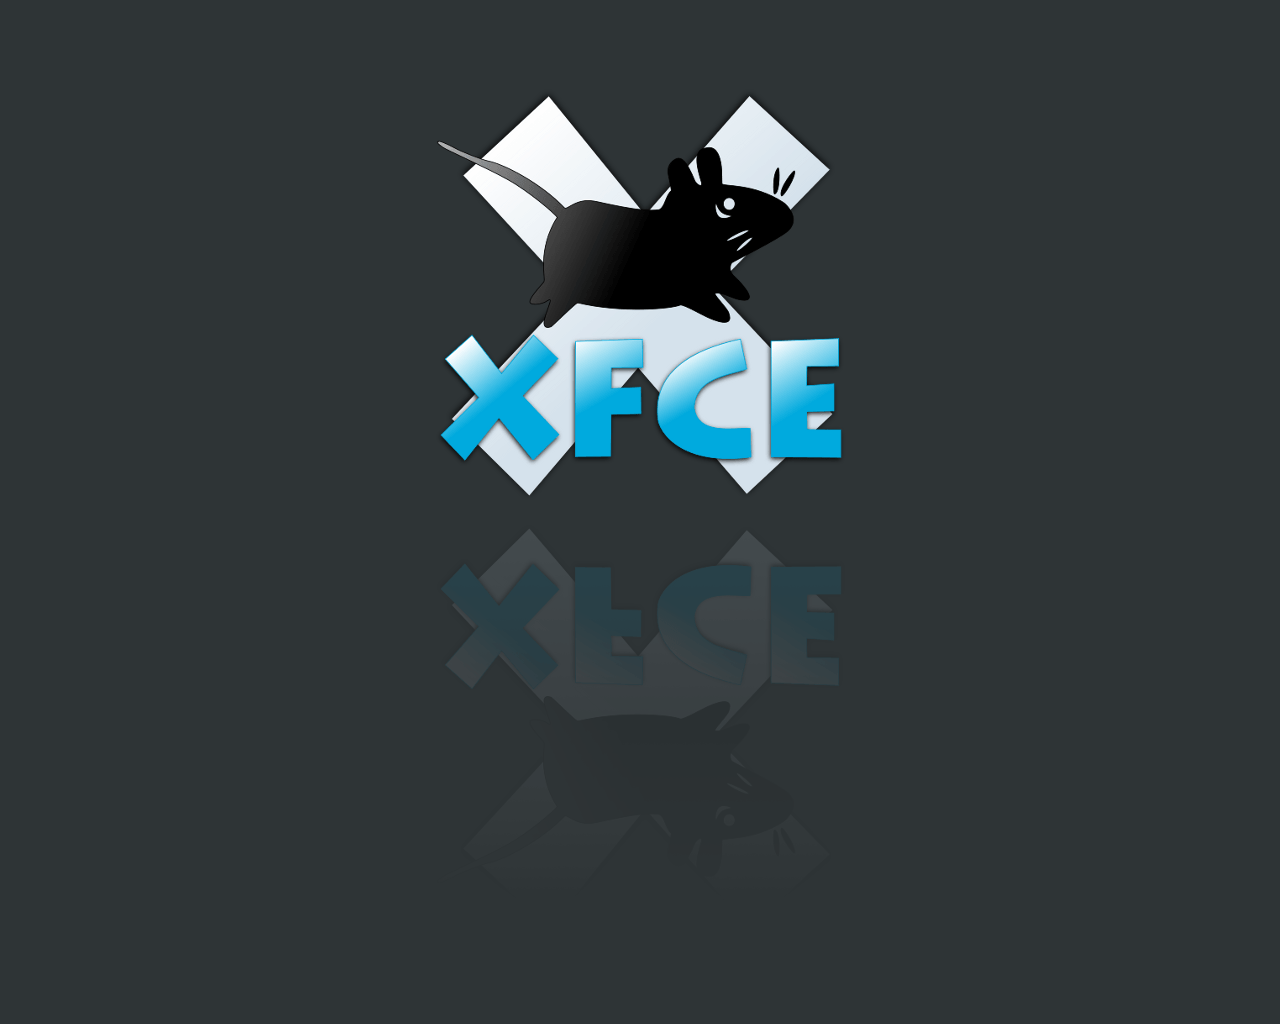 Xfce Wallpaper